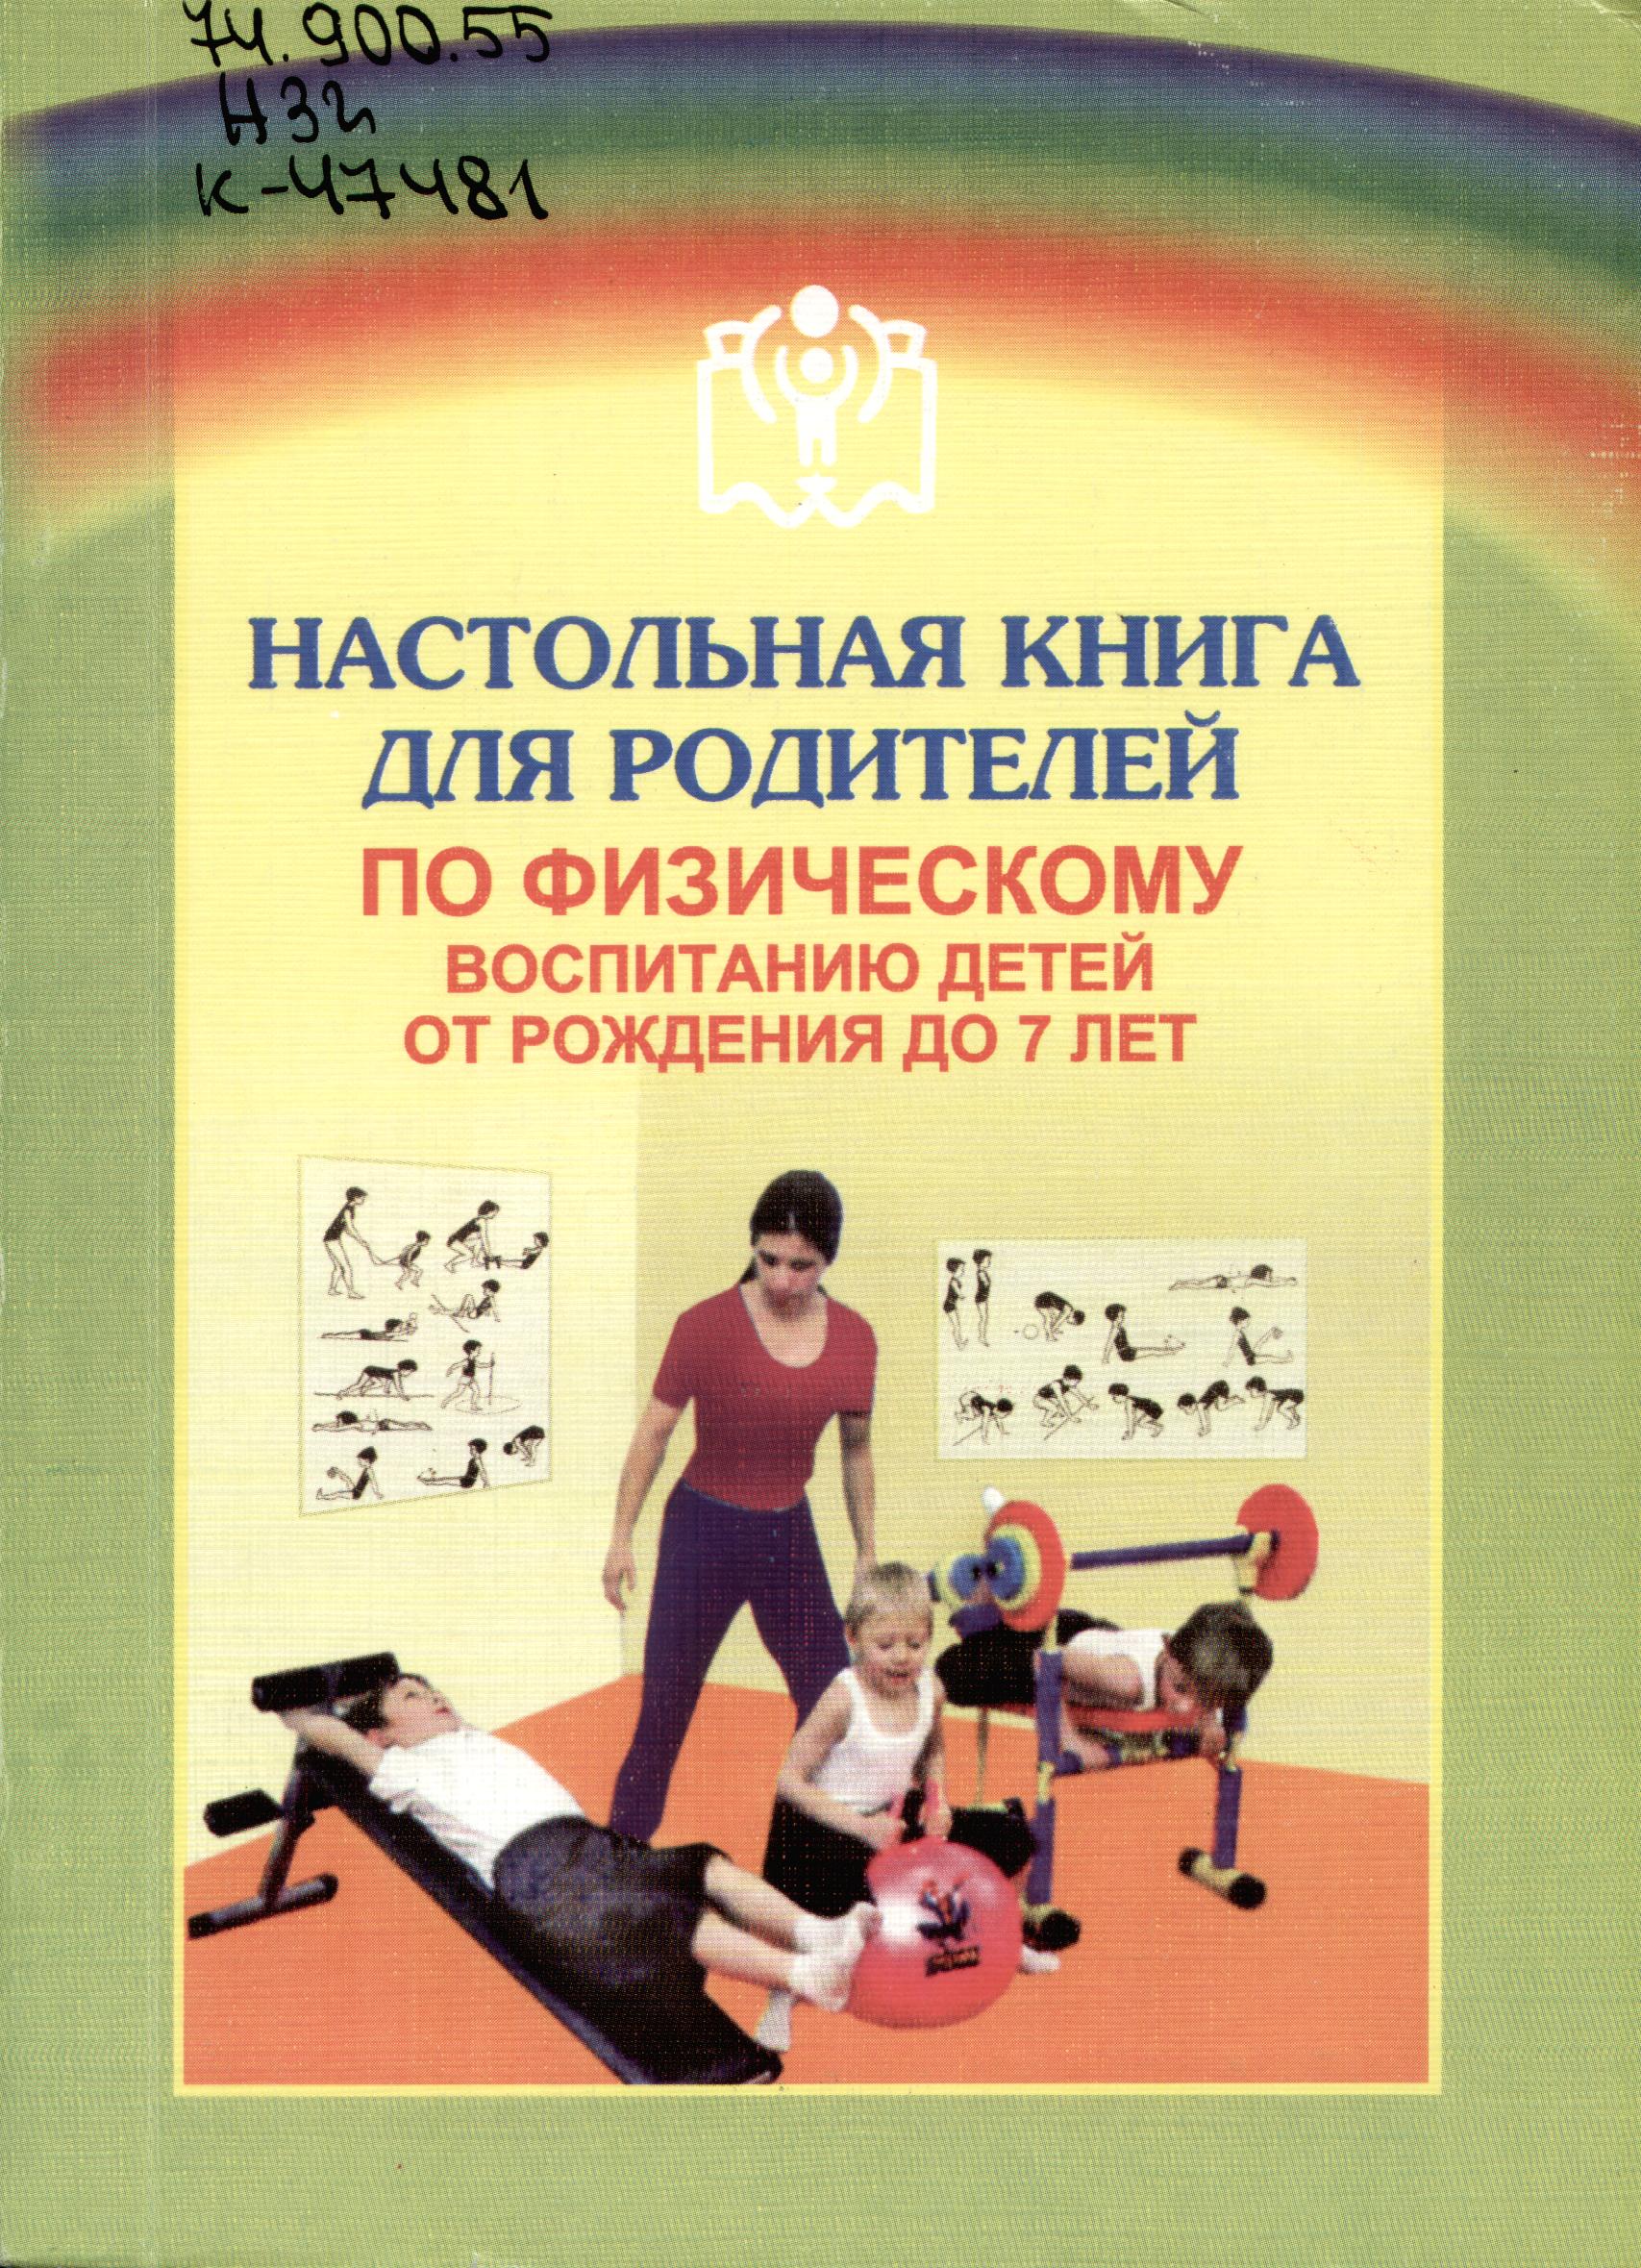 Настольная книга для родителей по физическому воспитанию детей от рождения до 7 лет